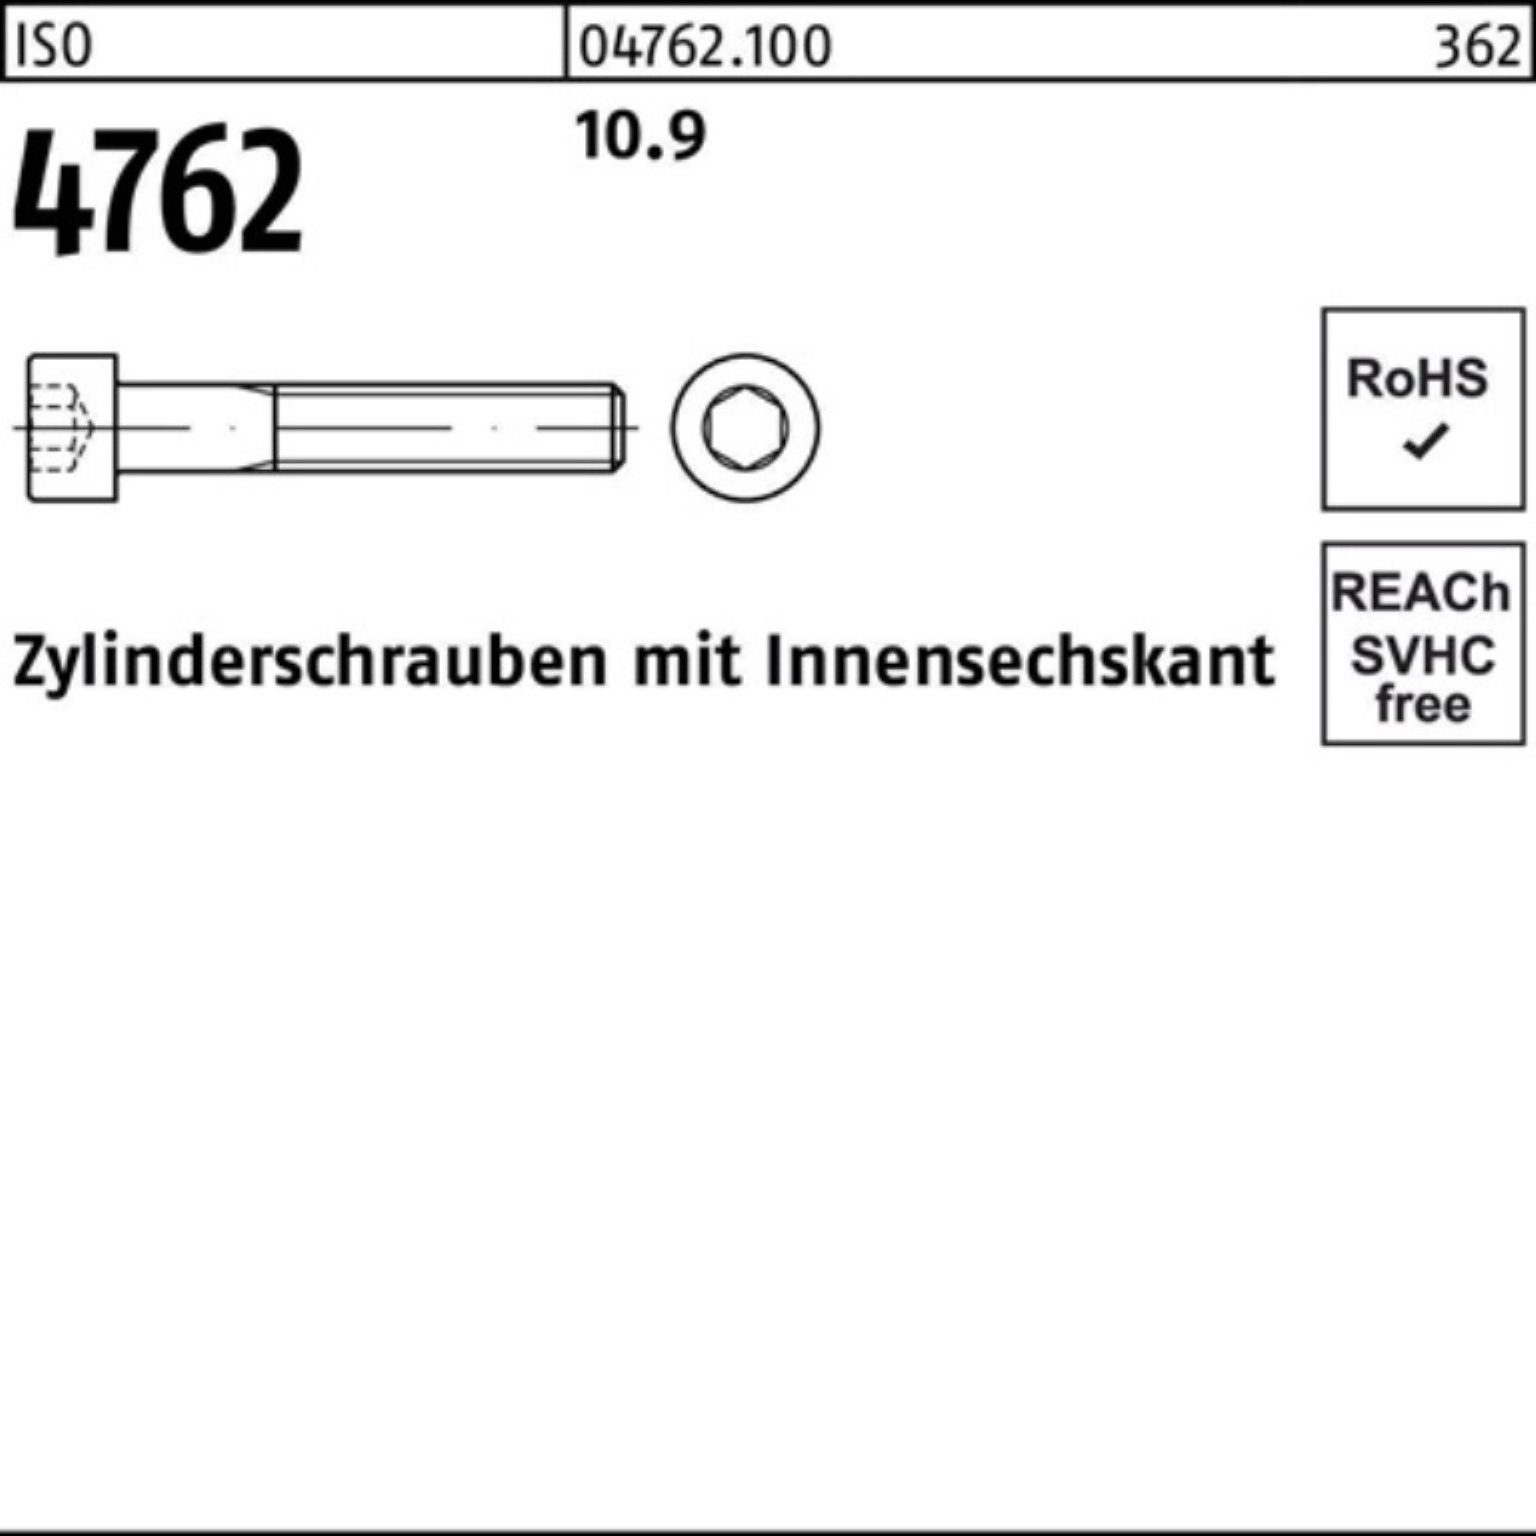 ISO Zylinderschraube Stück Zylinderschraube 100er 10.9 Reyher Innen-6kt 4762 1 M36x 100 Pack